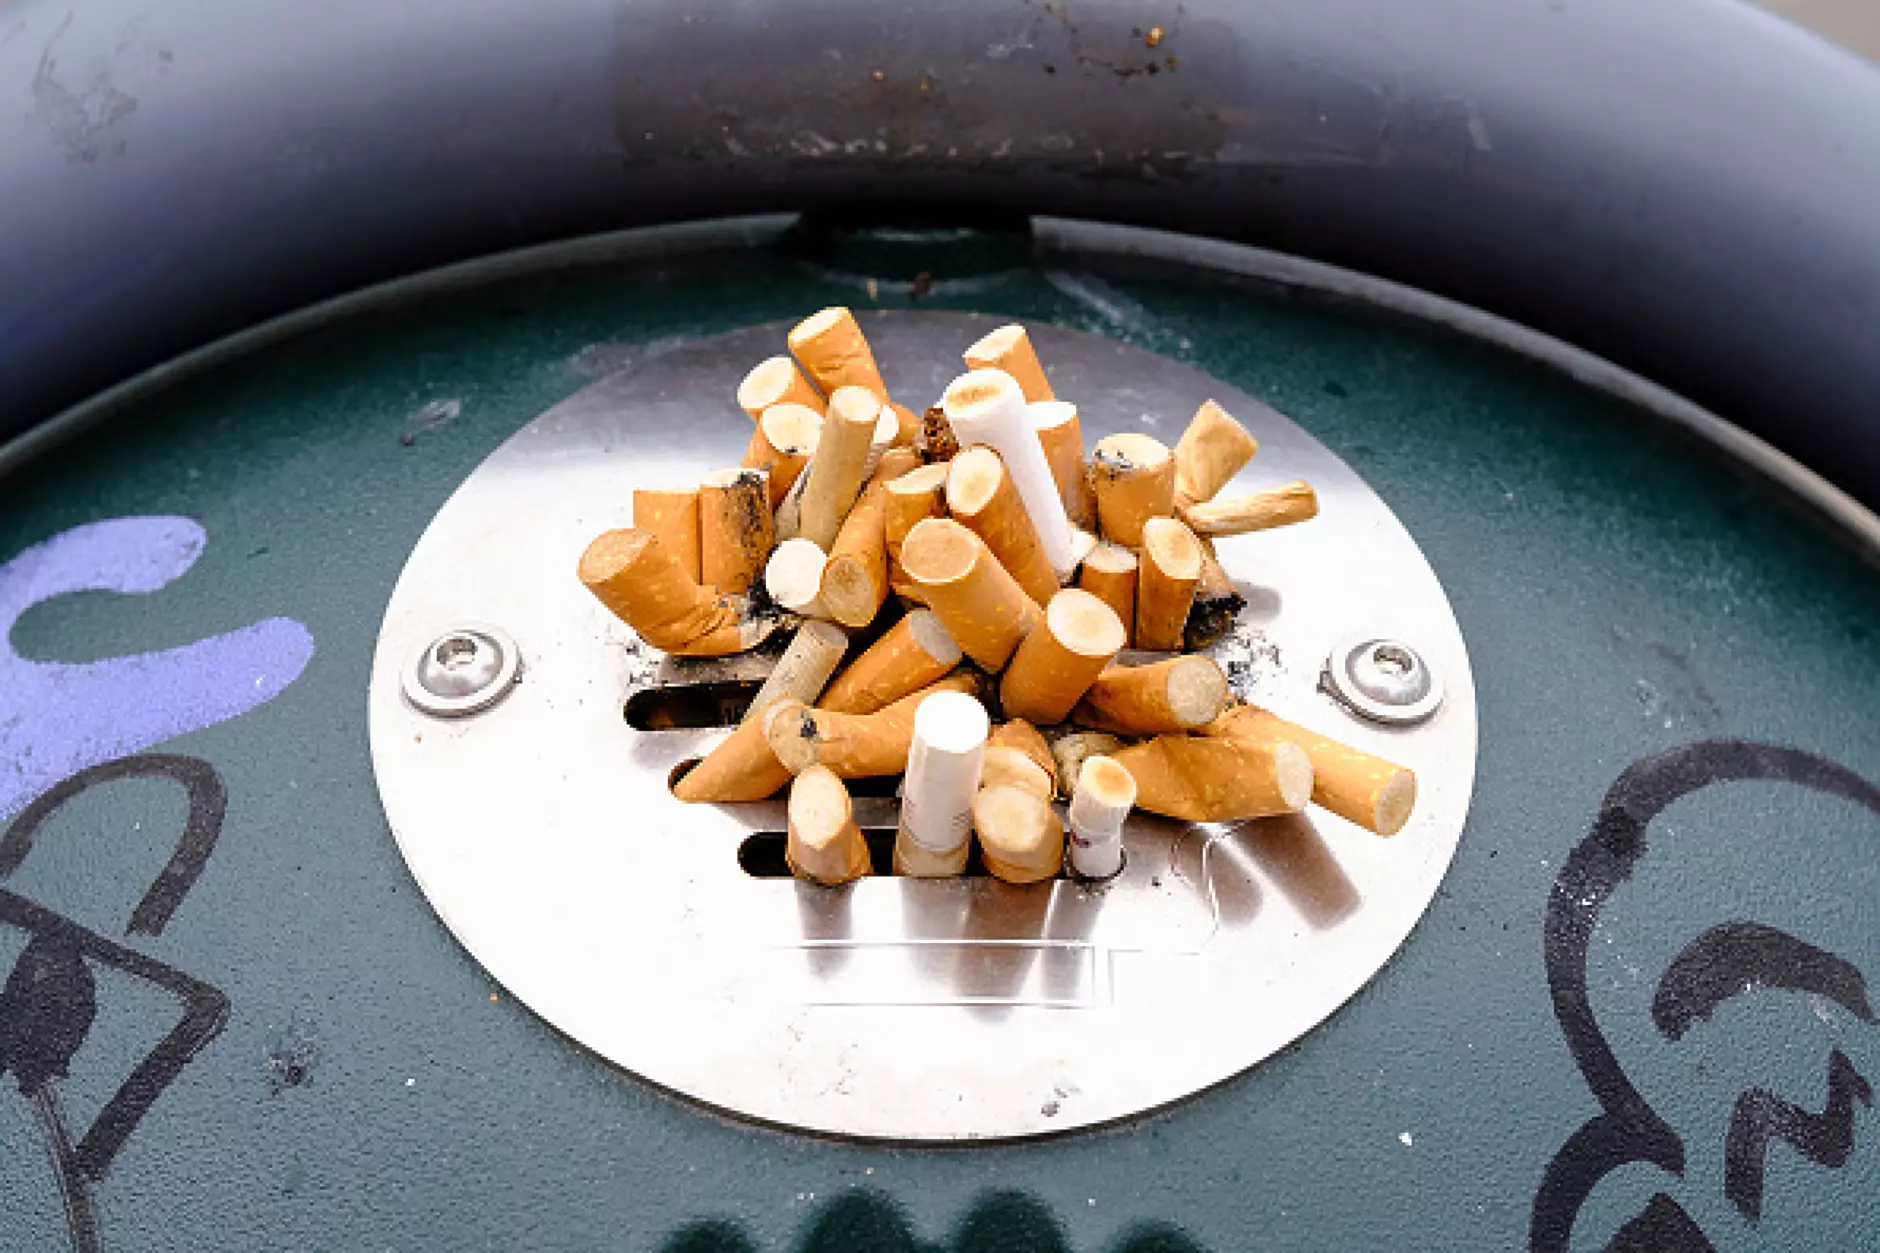 Служебният кабинет предложи вдигане на акциза на цигарите с 5 %